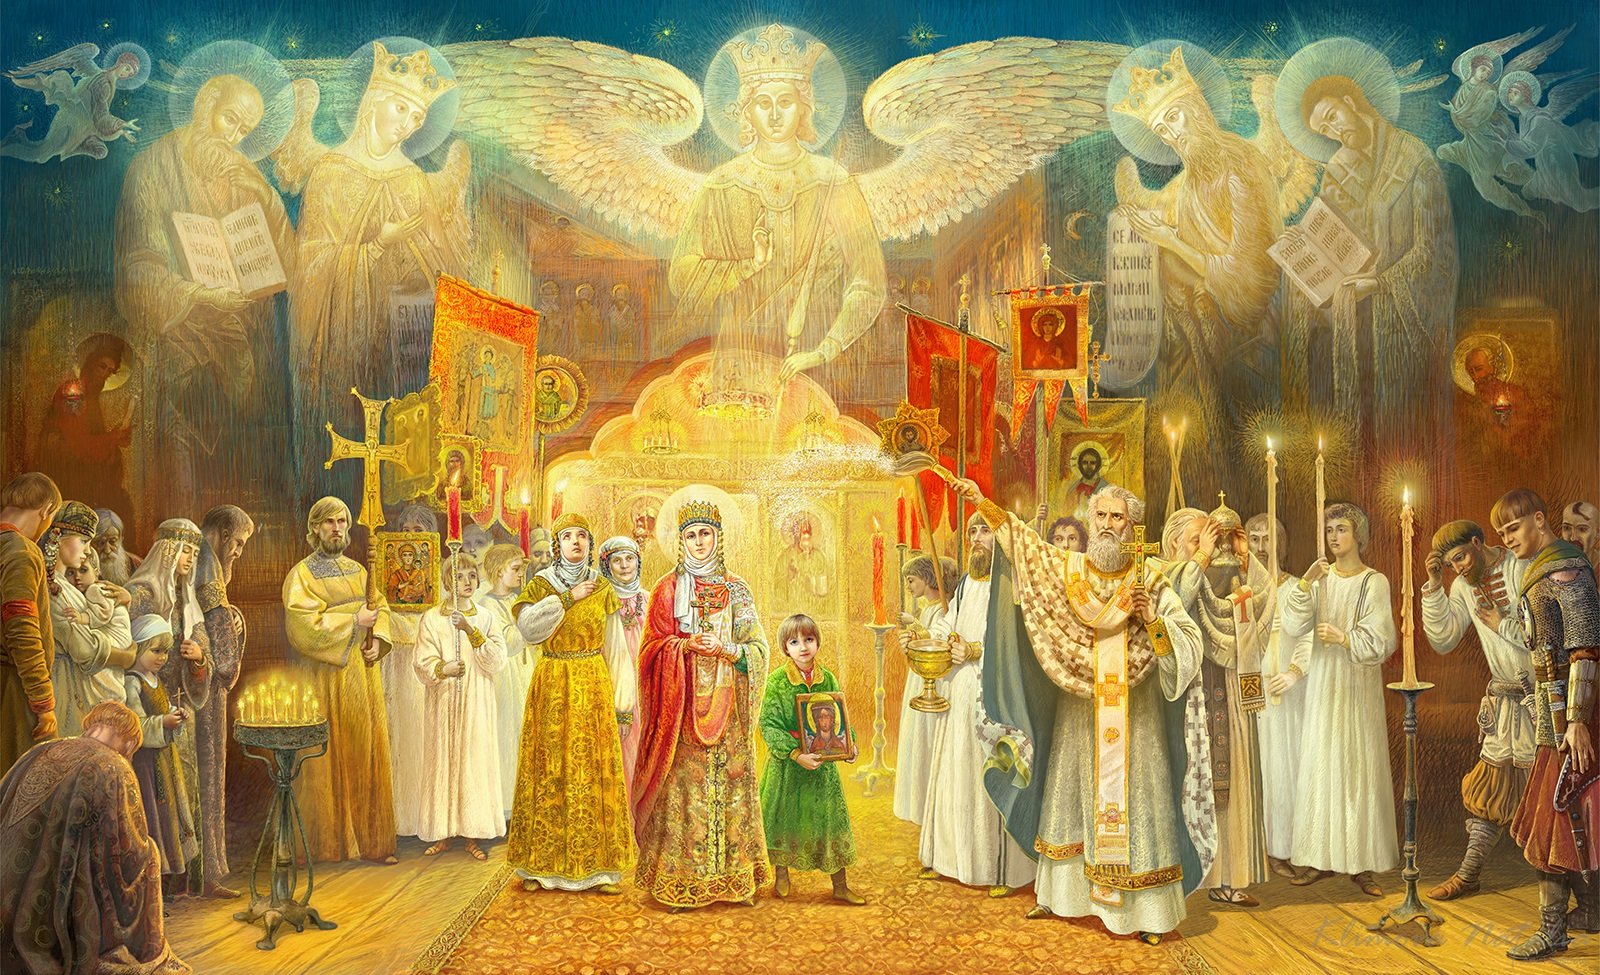 Великие святые россии